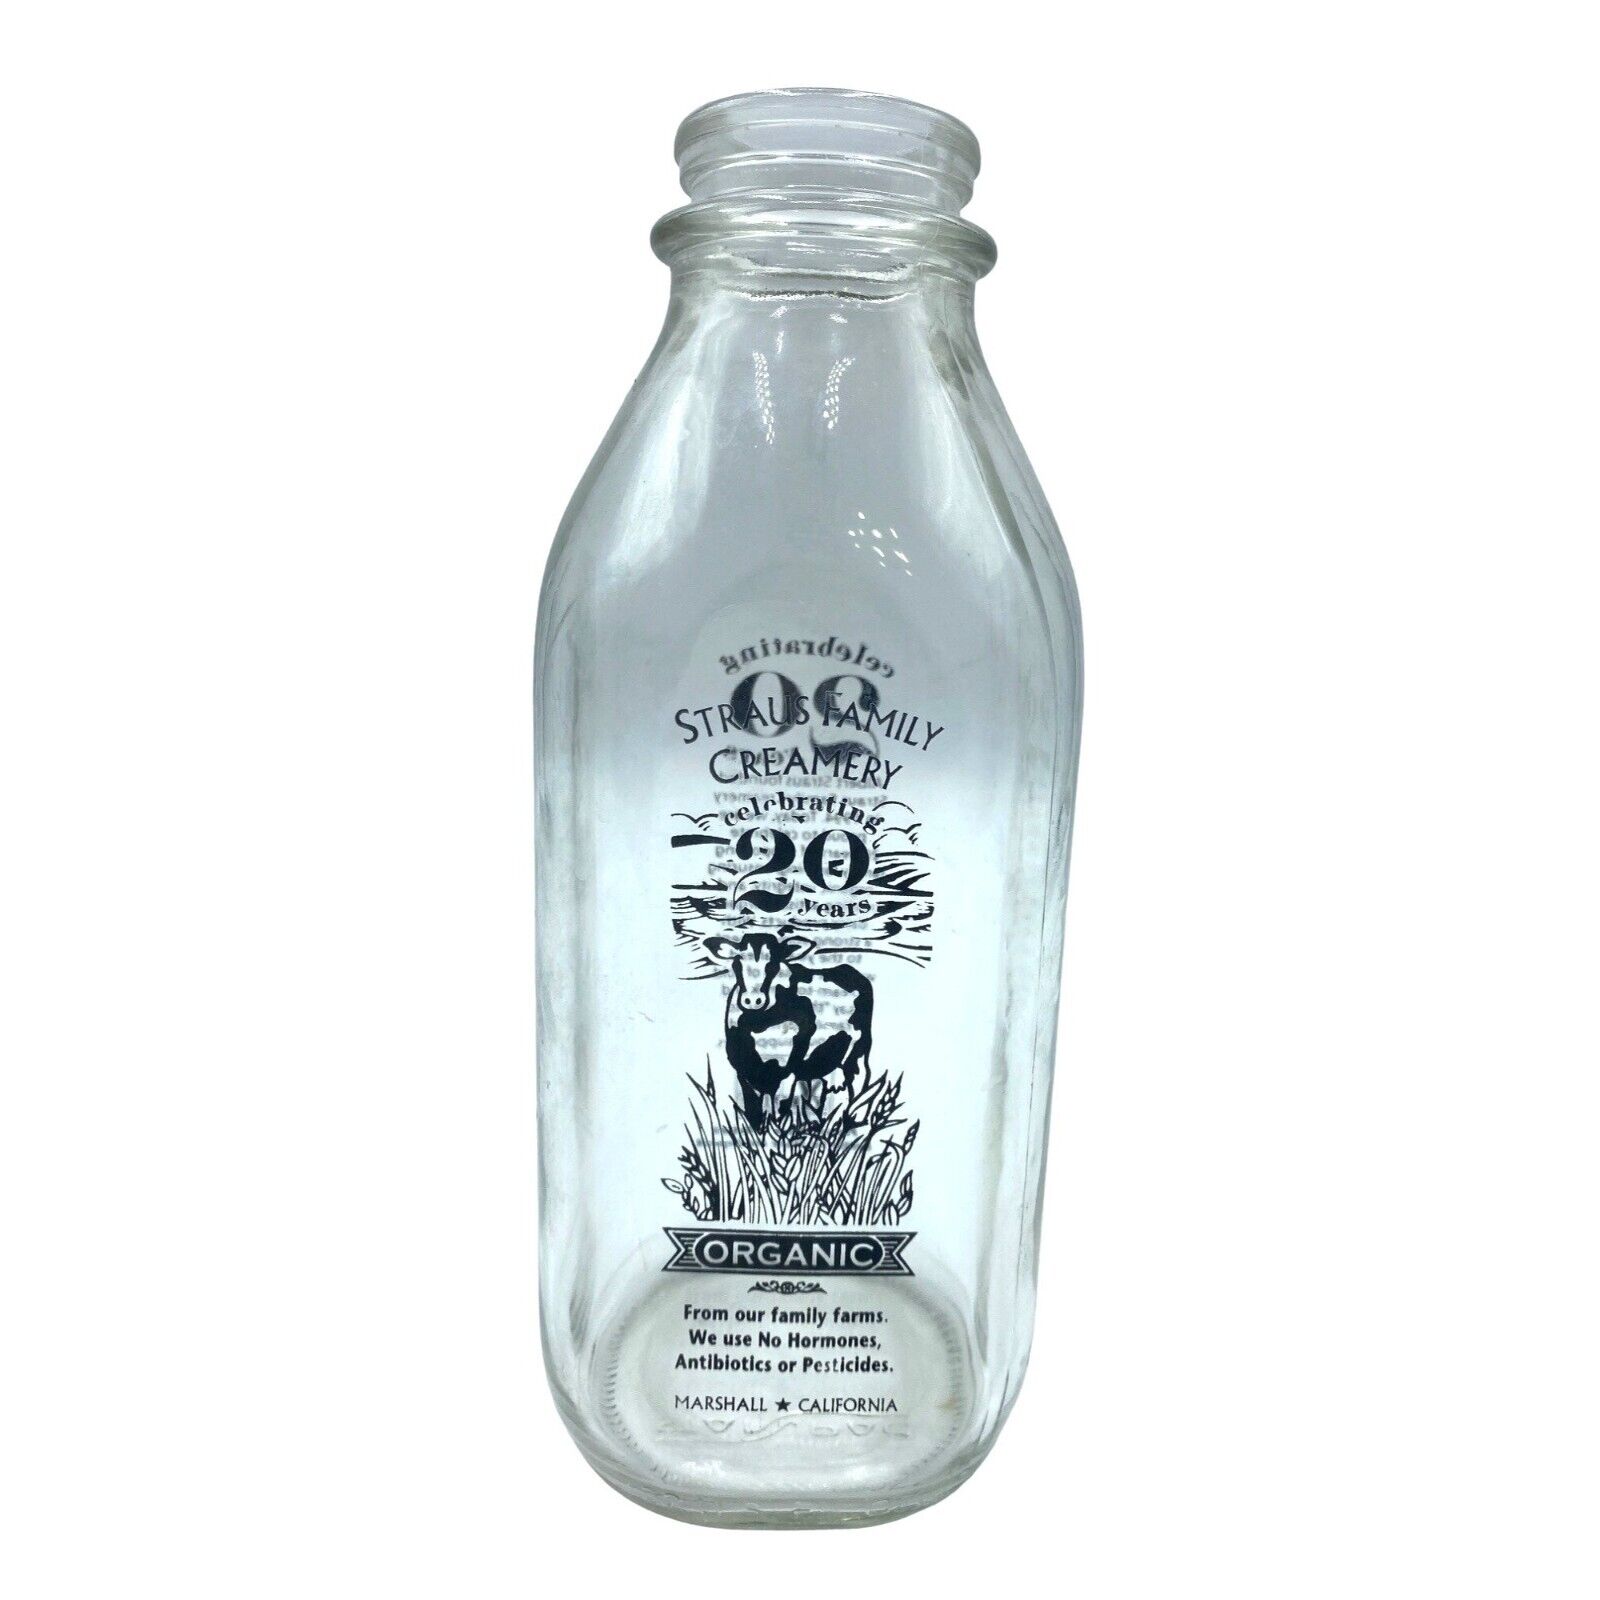 Straus Family Creamer Quart Milk Bottle 2014 Glass 20th Anniversary